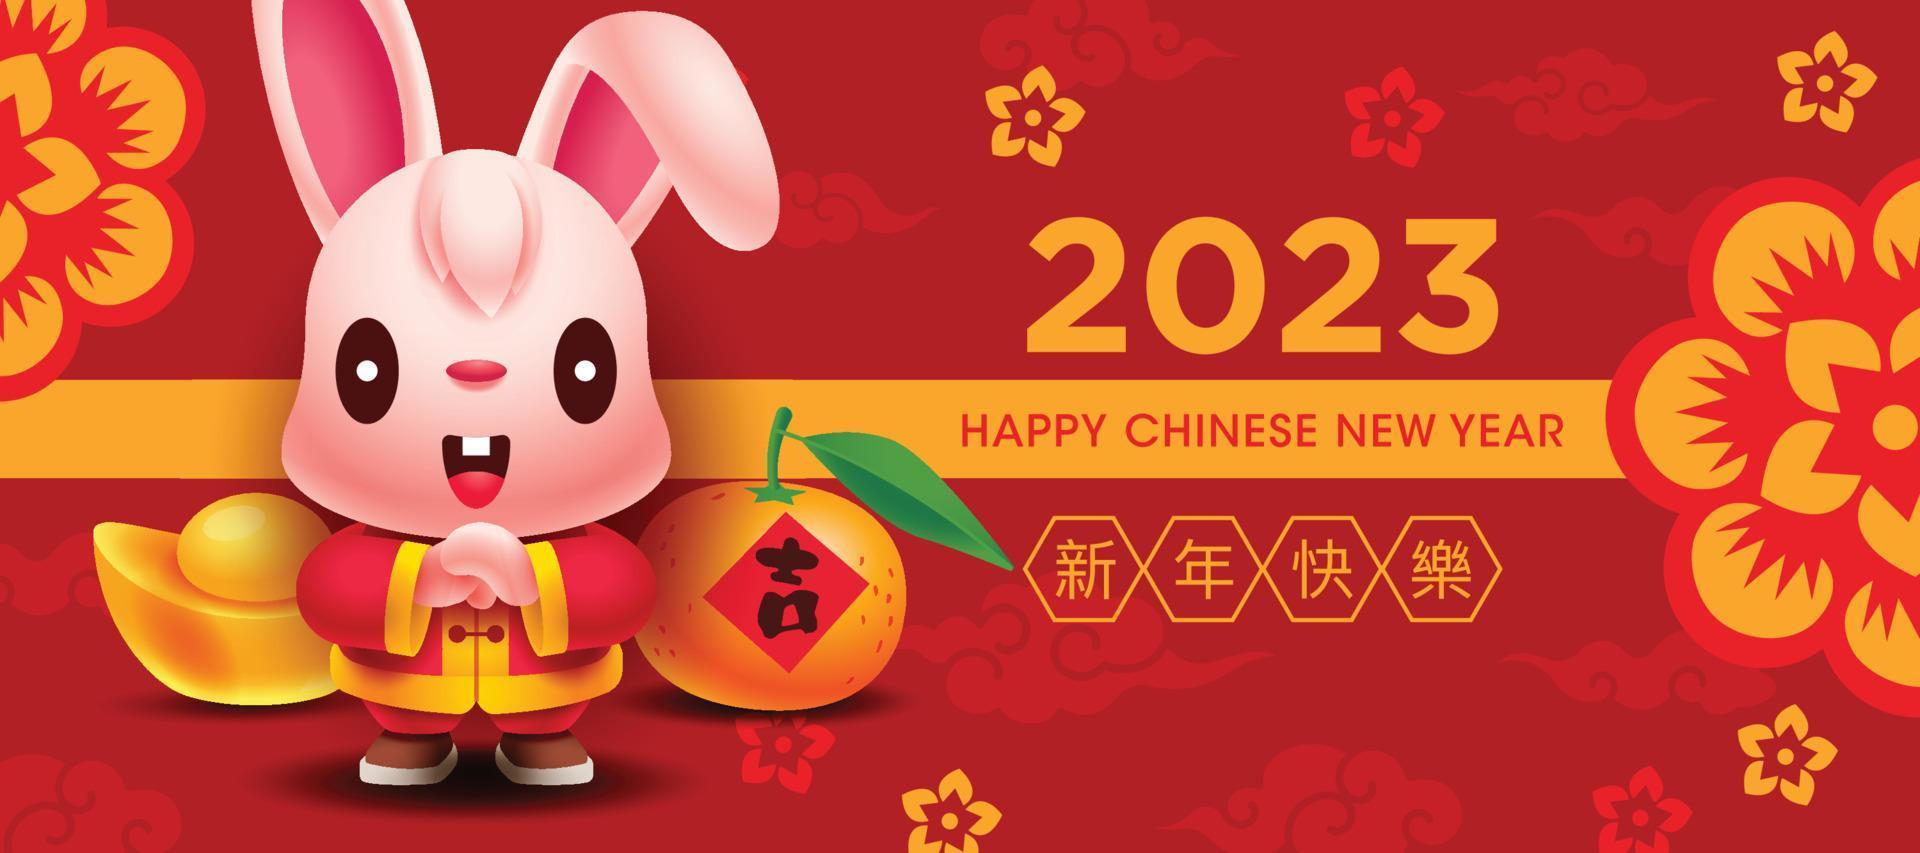 Banner de saudação de coelho fofo de ano novo chinês de 2023 vetor